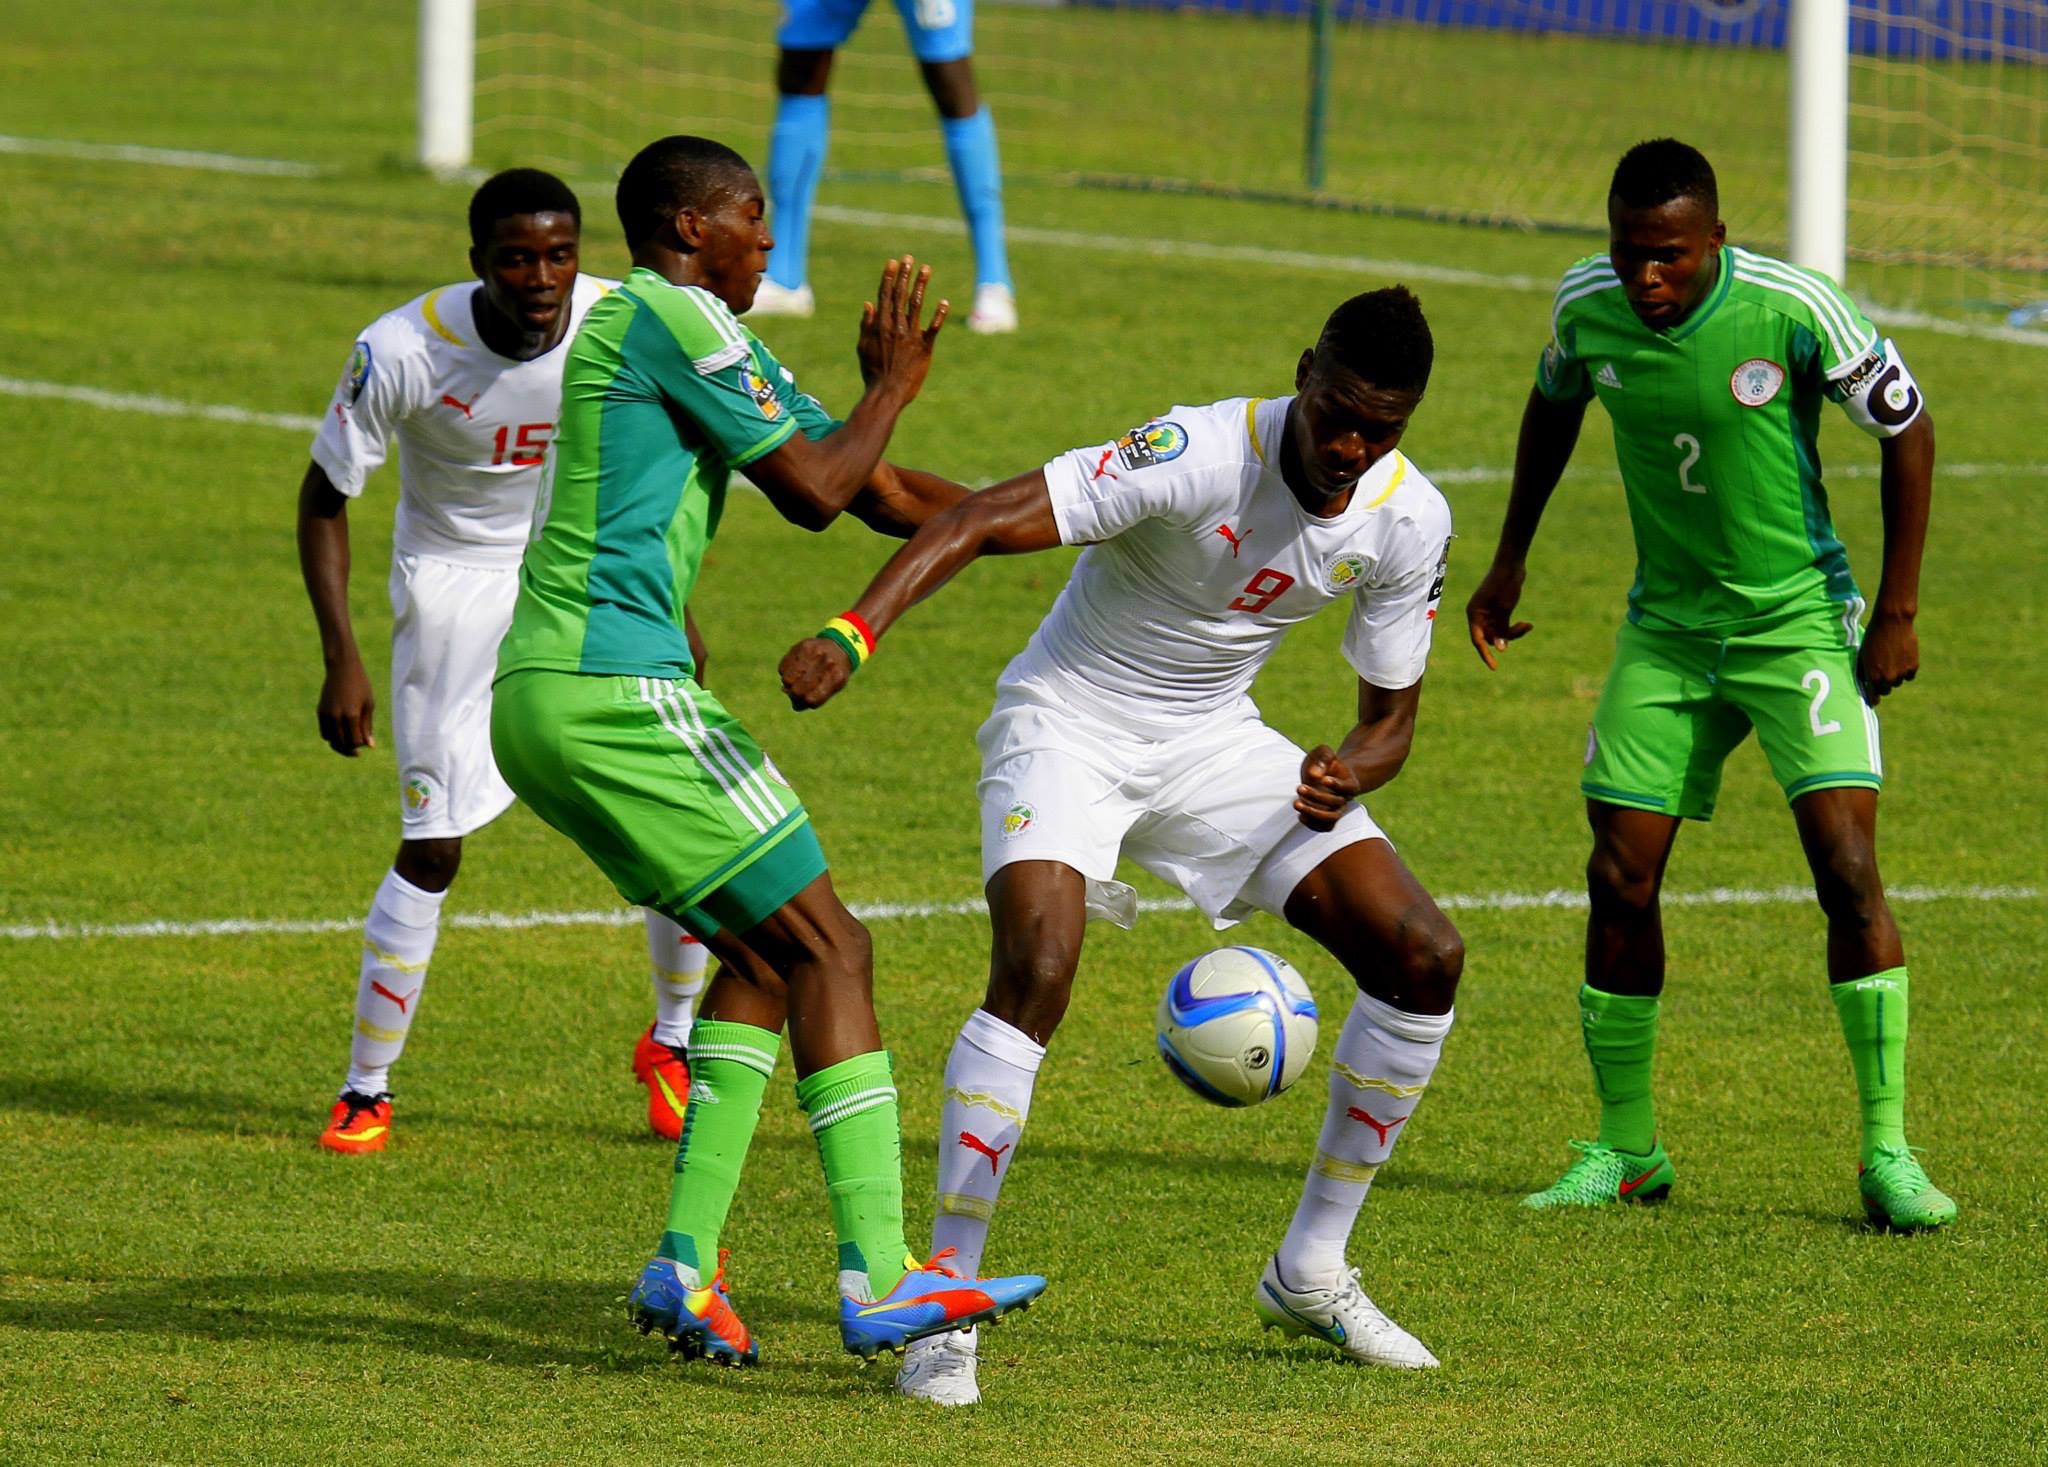 CAN U20-VAINQUEUR DE L’AFRIQUE DANS LA DOULEUR: Le Sénégal rejoint le Mali en finale